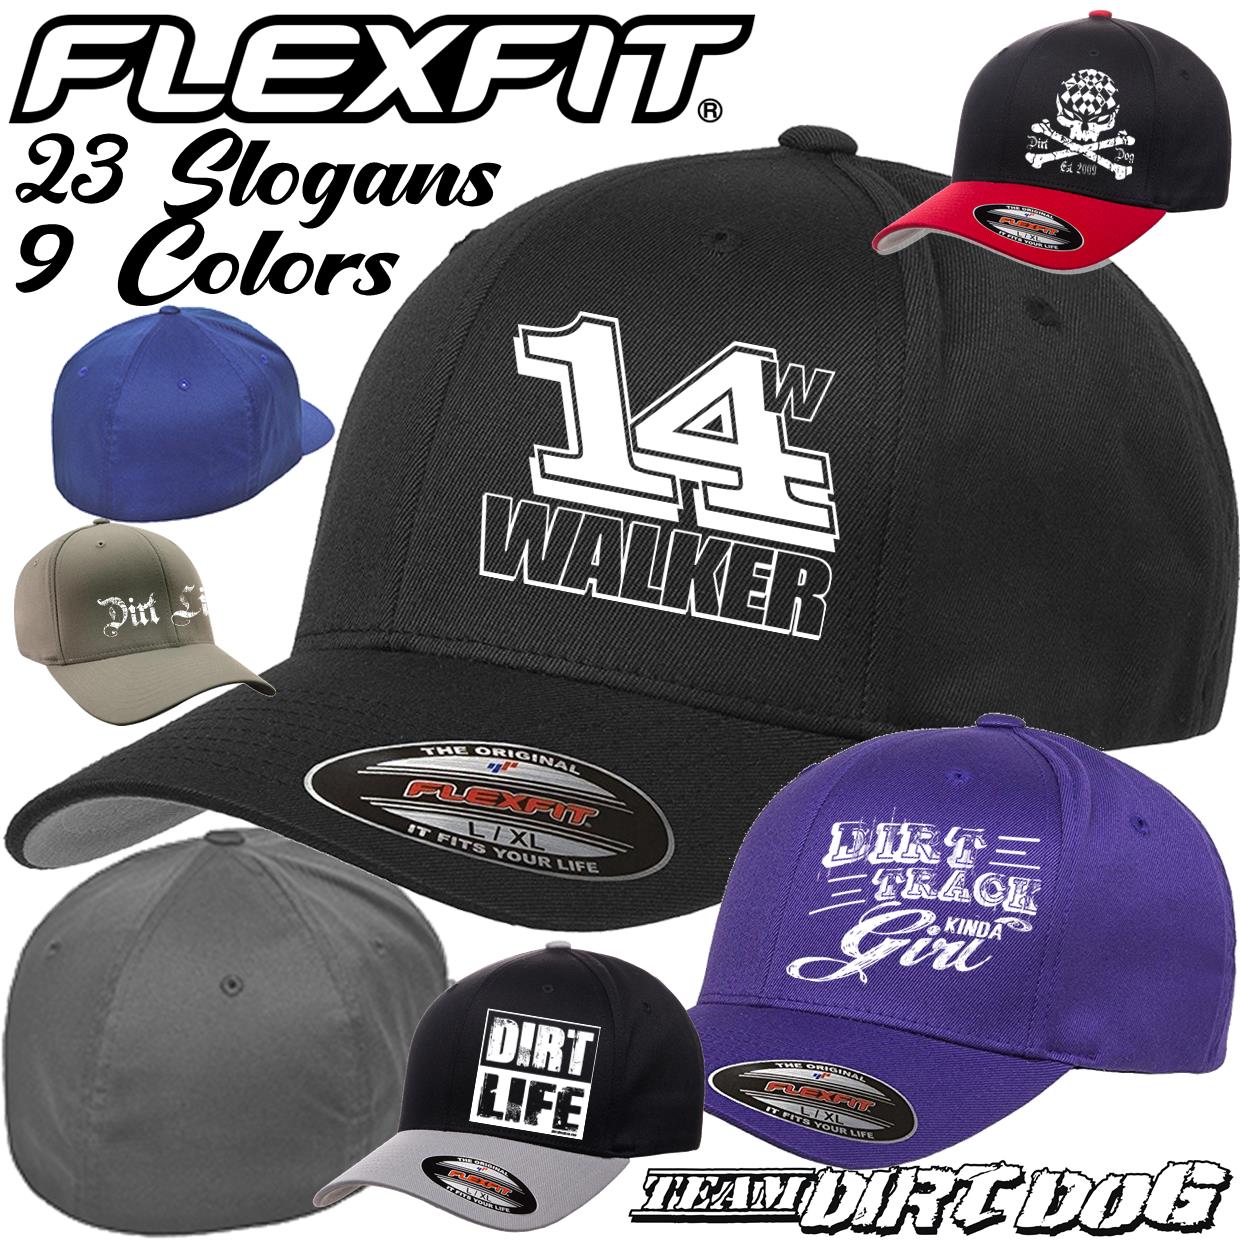 Walker 14w Flexfit® Wooly 6 Panel